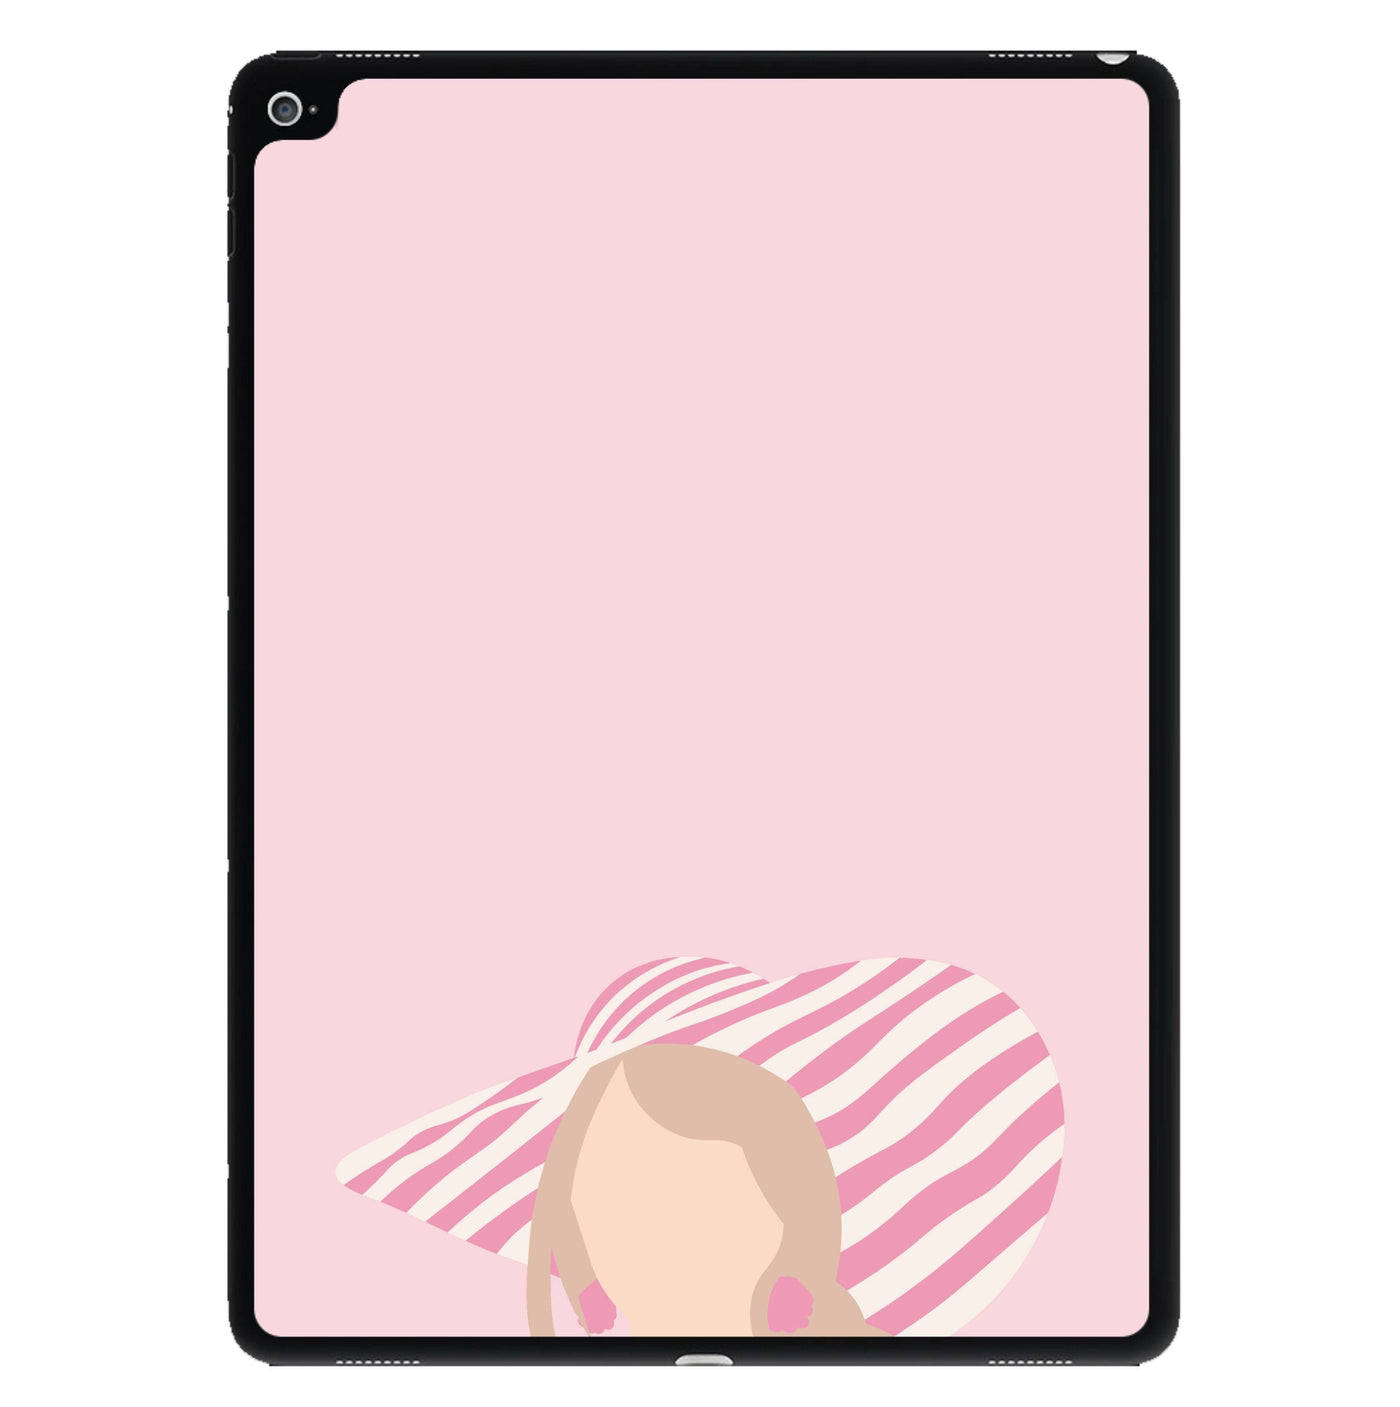 Beach - Margot Robbie iPad Case